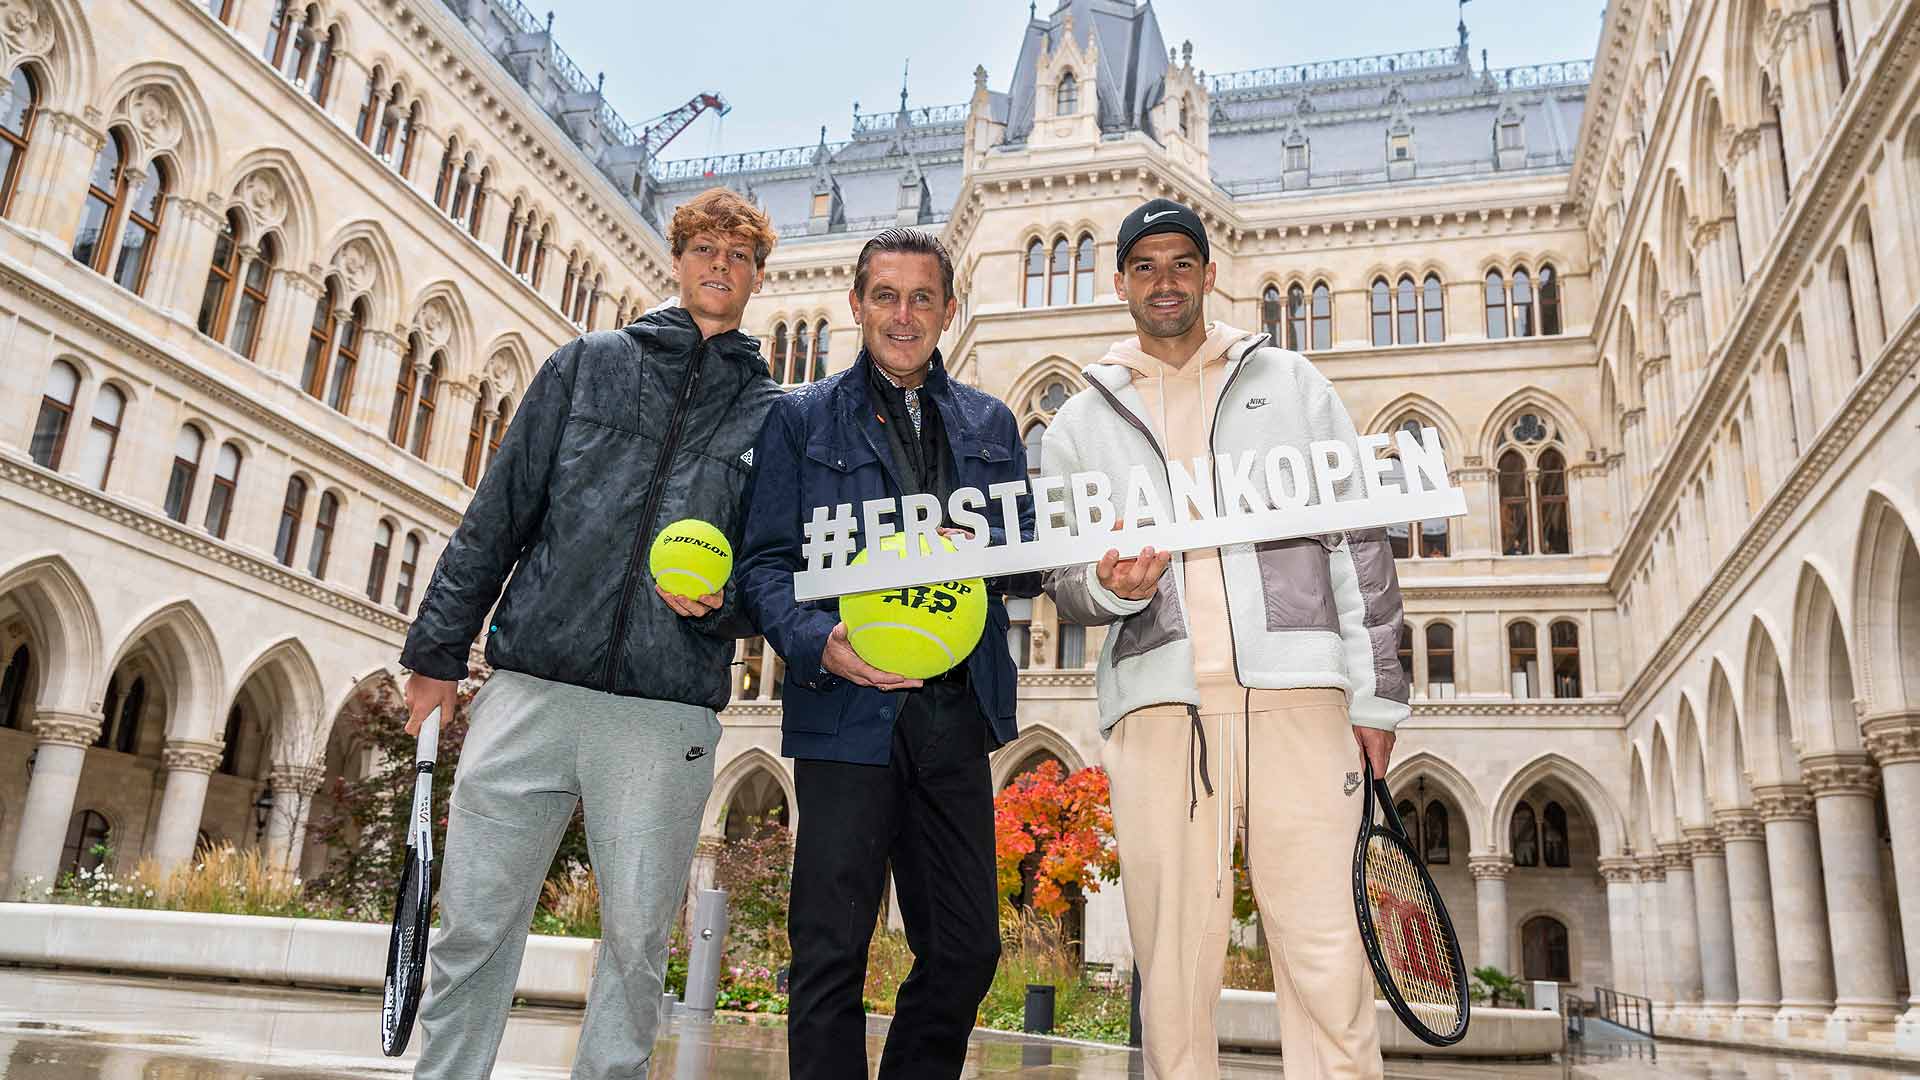 ATP Vienna - Erste Bank Open 2022: Participants, draw, schedule, TV, live  stream, live ticker, prize money ·